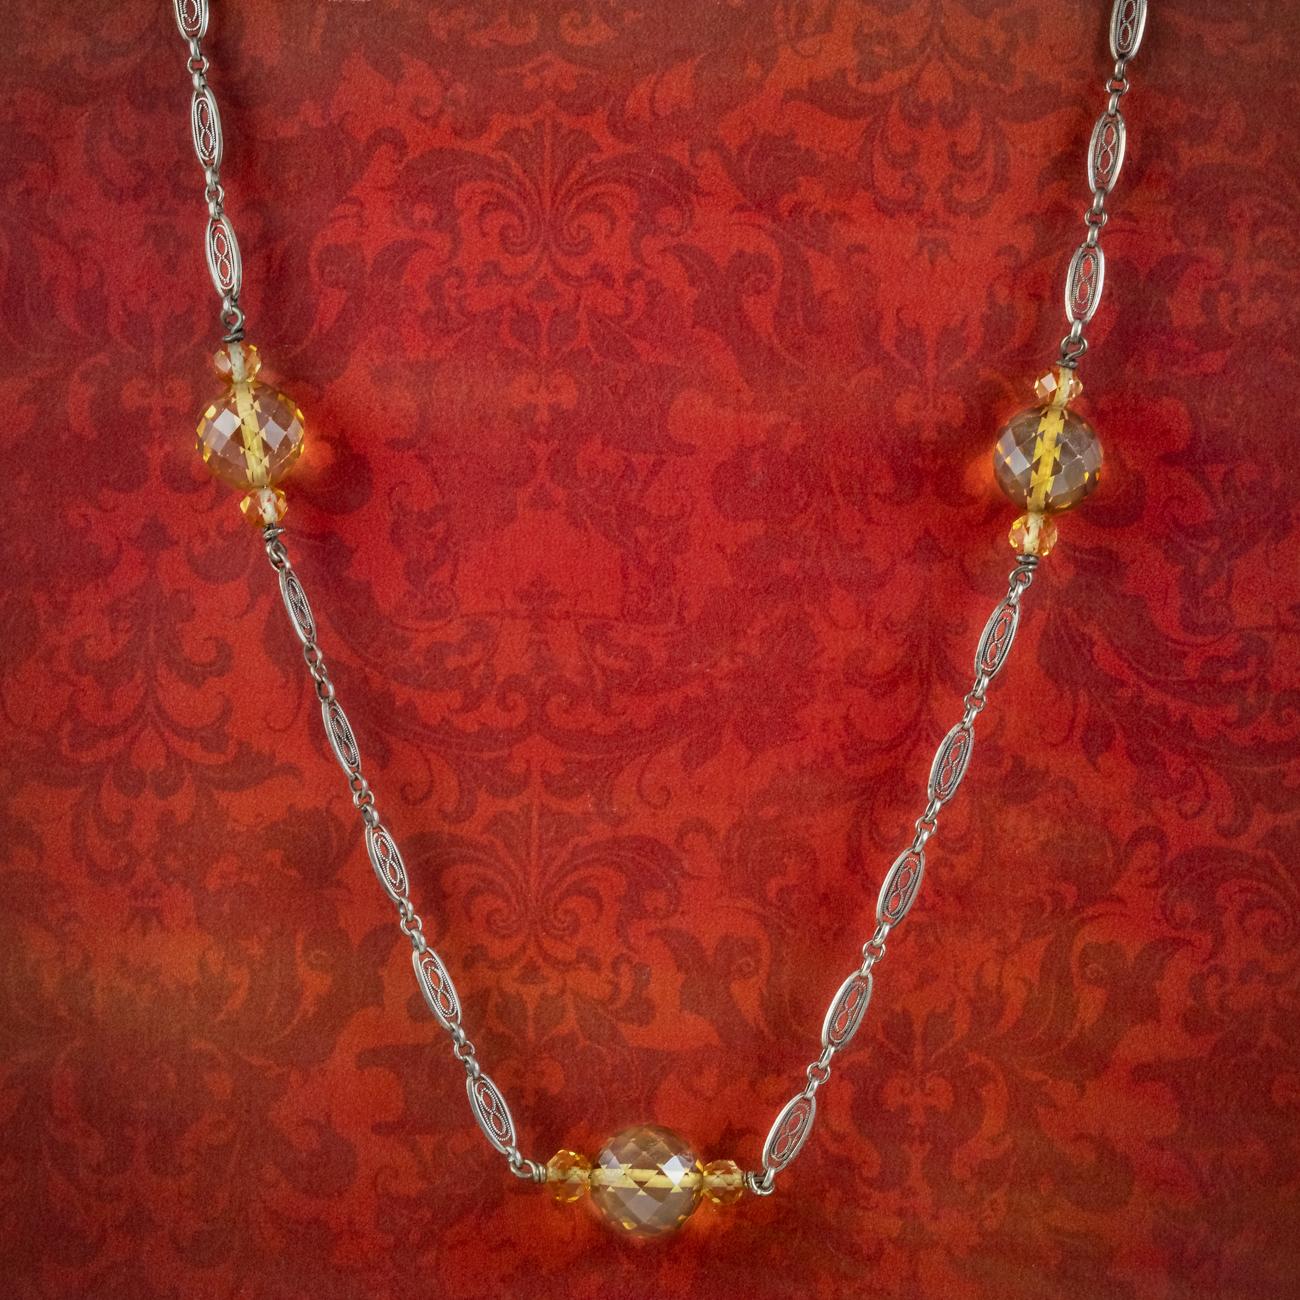 Eine wunderbare antike edwardianische Kette mit fünf großen Citrin-Perlen im Briolett-Schliff und kleineren Citrin-Perlen auf beiden Seiten. Sie sind mit einer Reihe von diamantförmigen Facetten geschliffen, die im Licht wunderschön glitzern und in